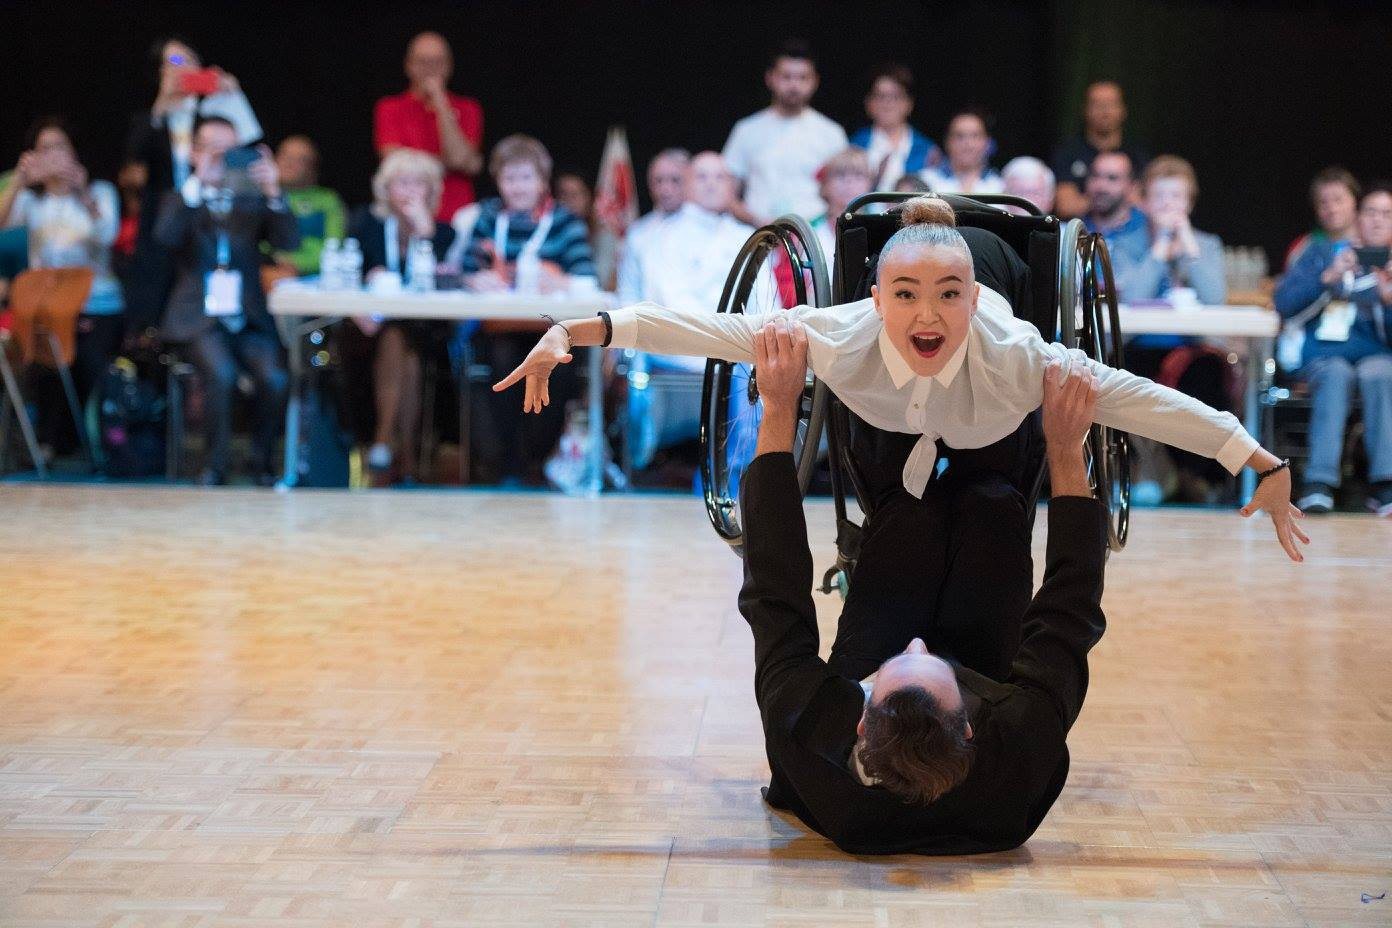 Cuijk will host the first World Para Dance Sport competition of the season ©World Para Dance Sport/Facebook